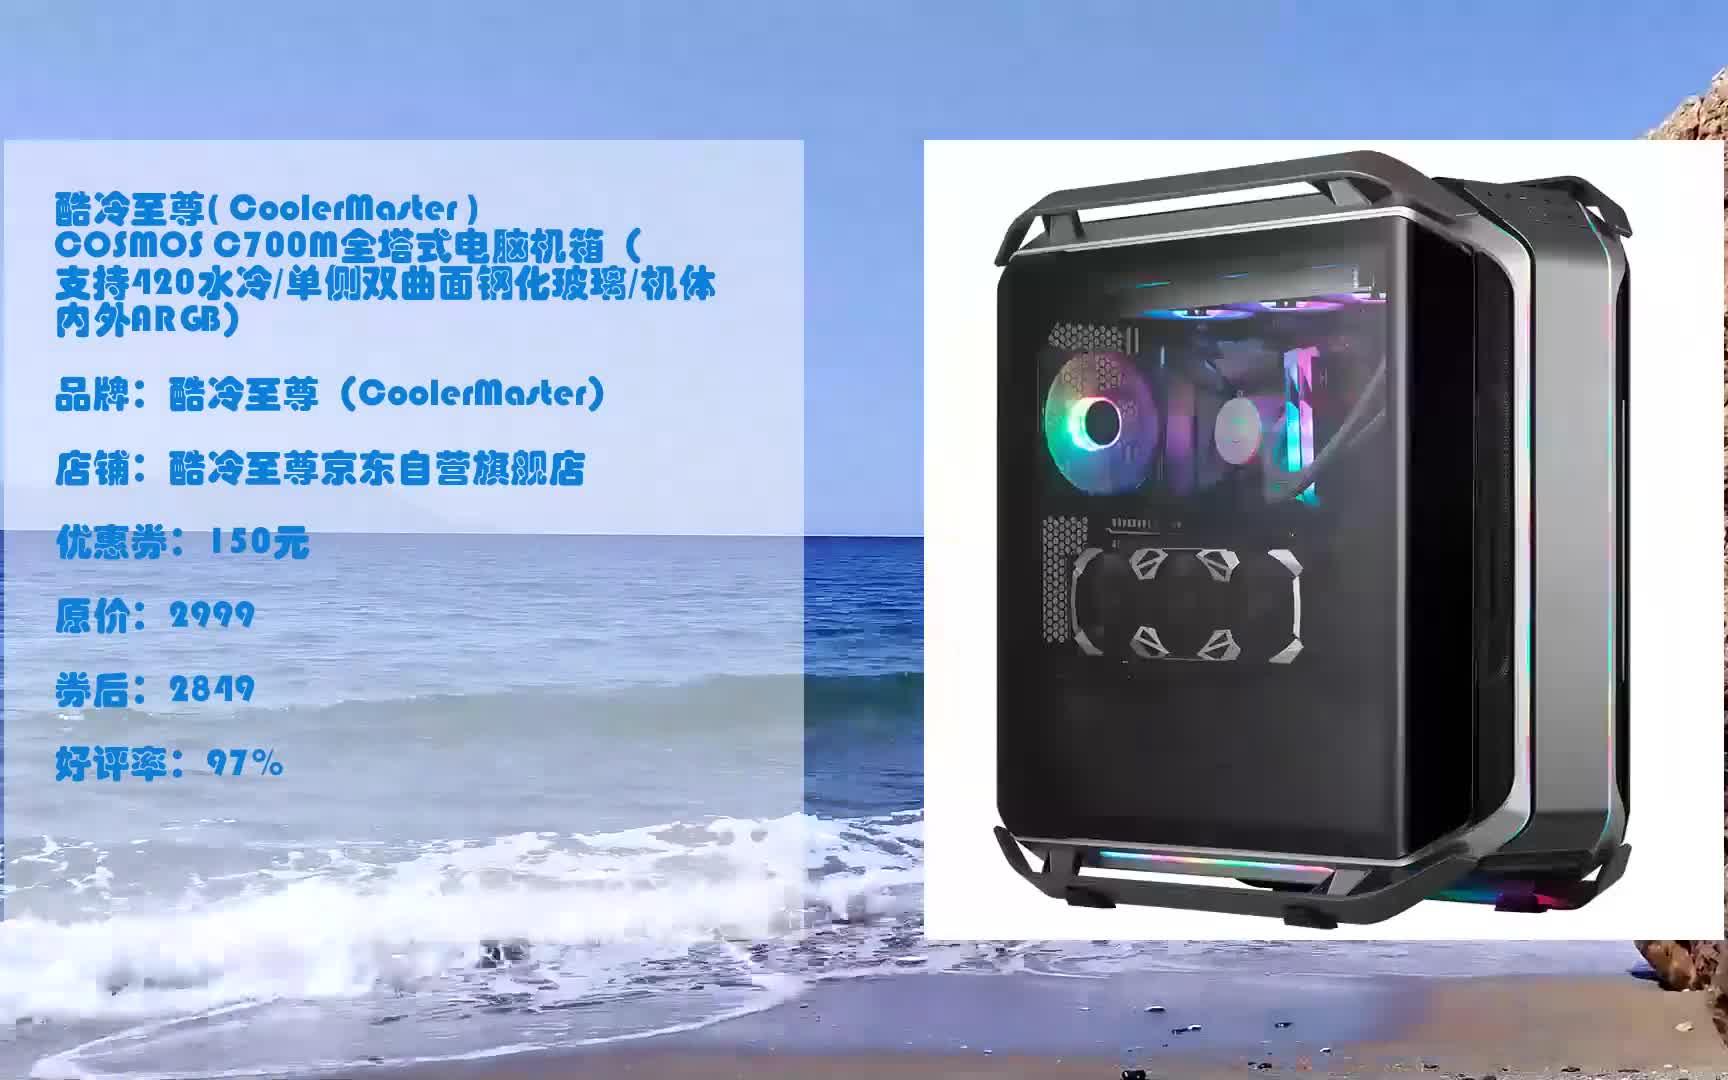 618优惠 酷冷至尊( coolermaster )cosmos c700m全塔式电脑机箱(支持